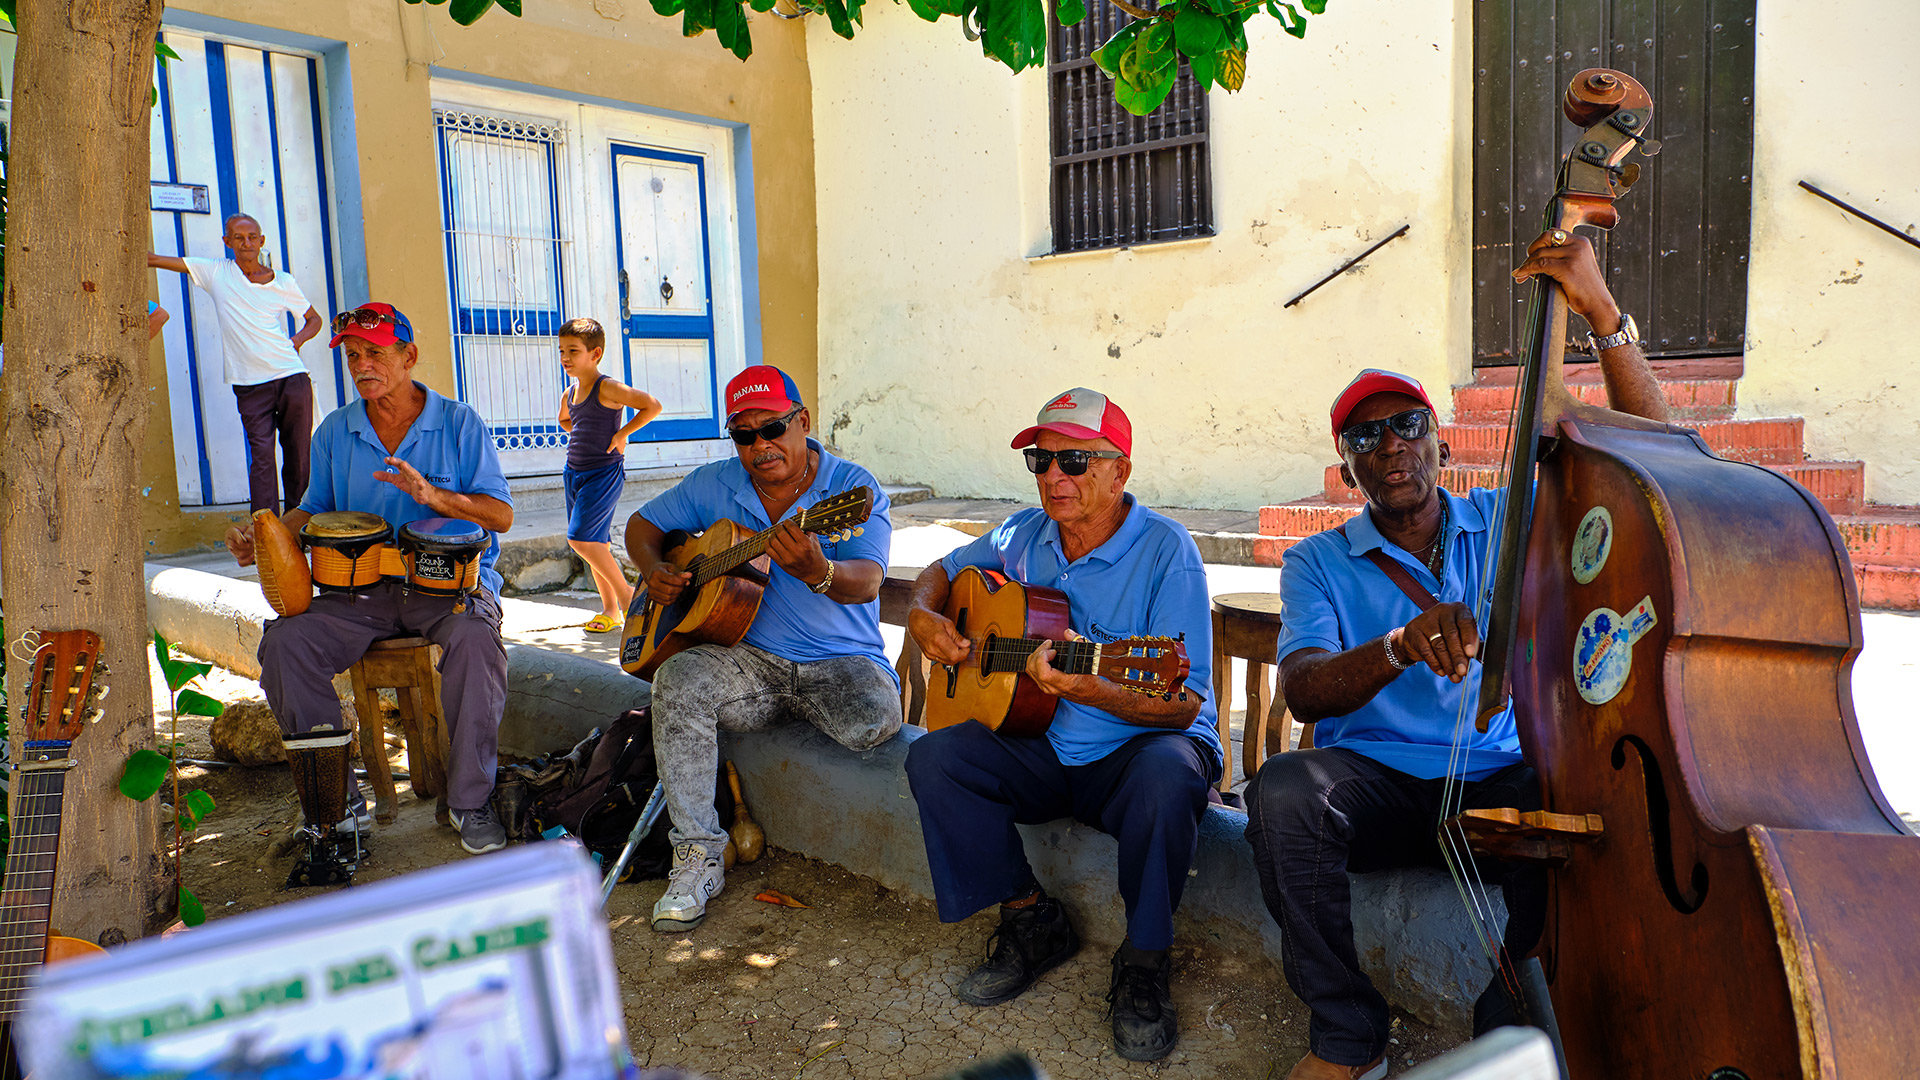 Música cubana y cultura cubana